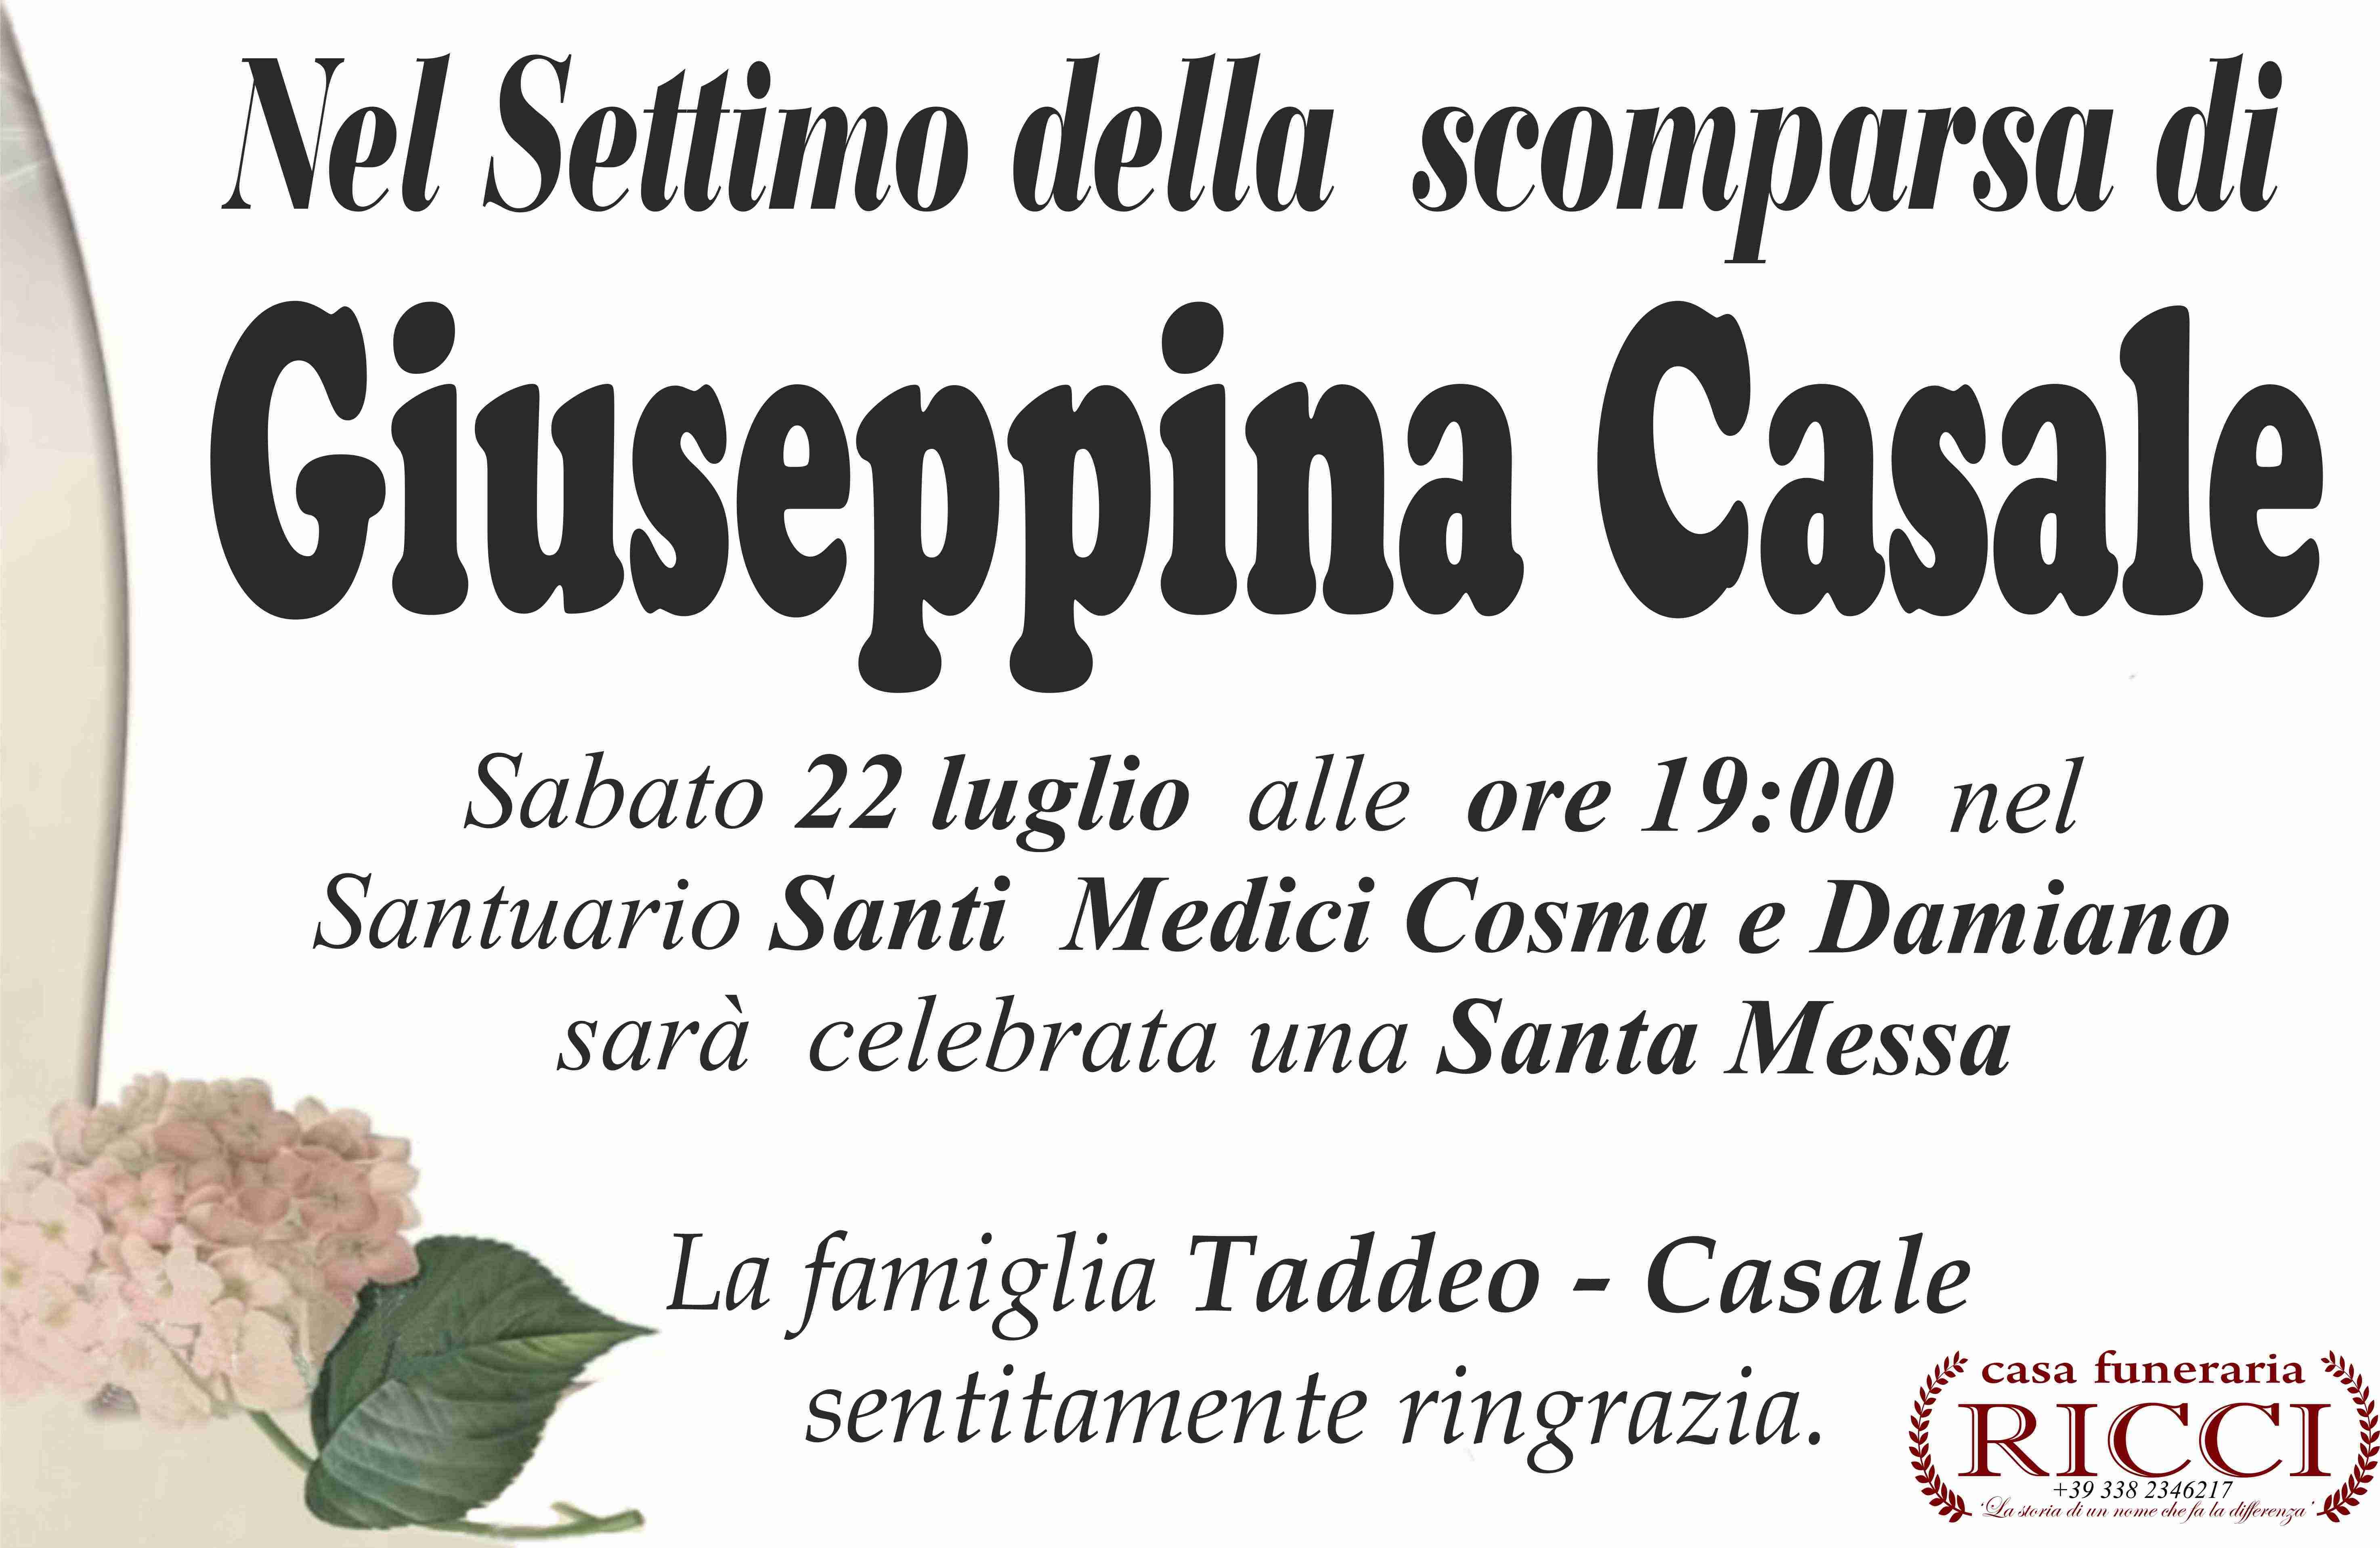 Giuseppina Casale